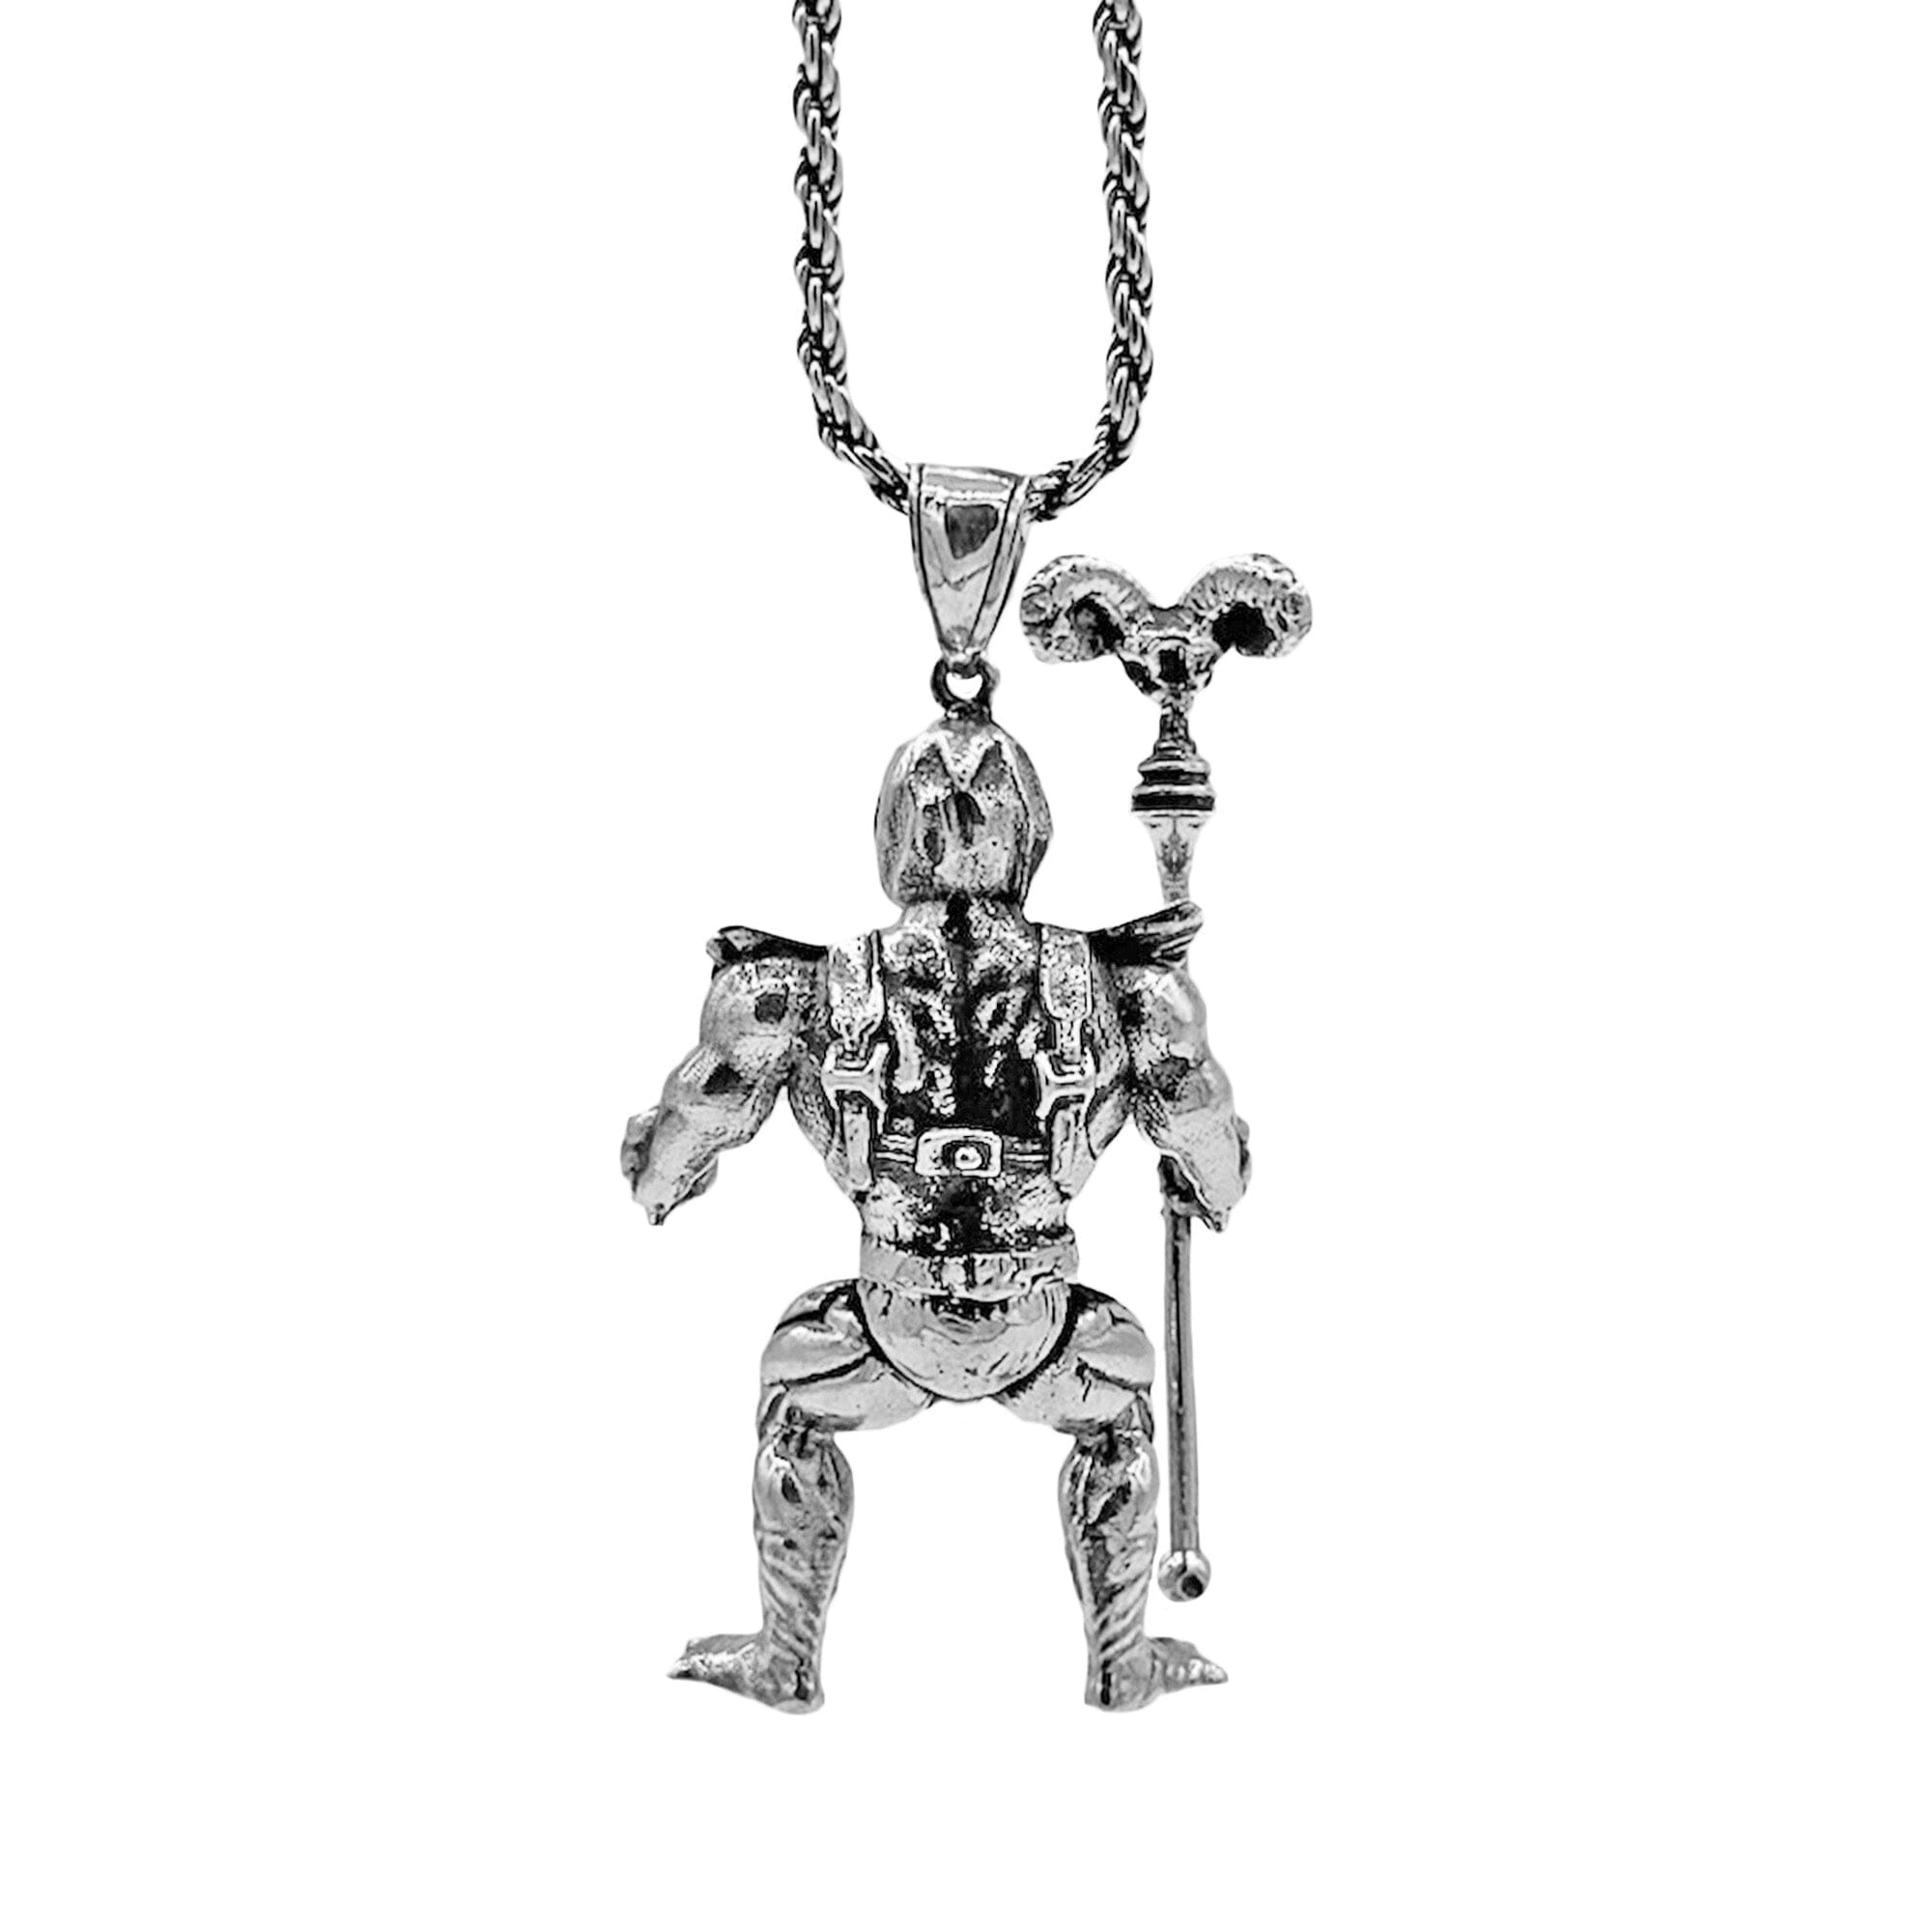 Skeletor necklace, Skeletor collectors item, 